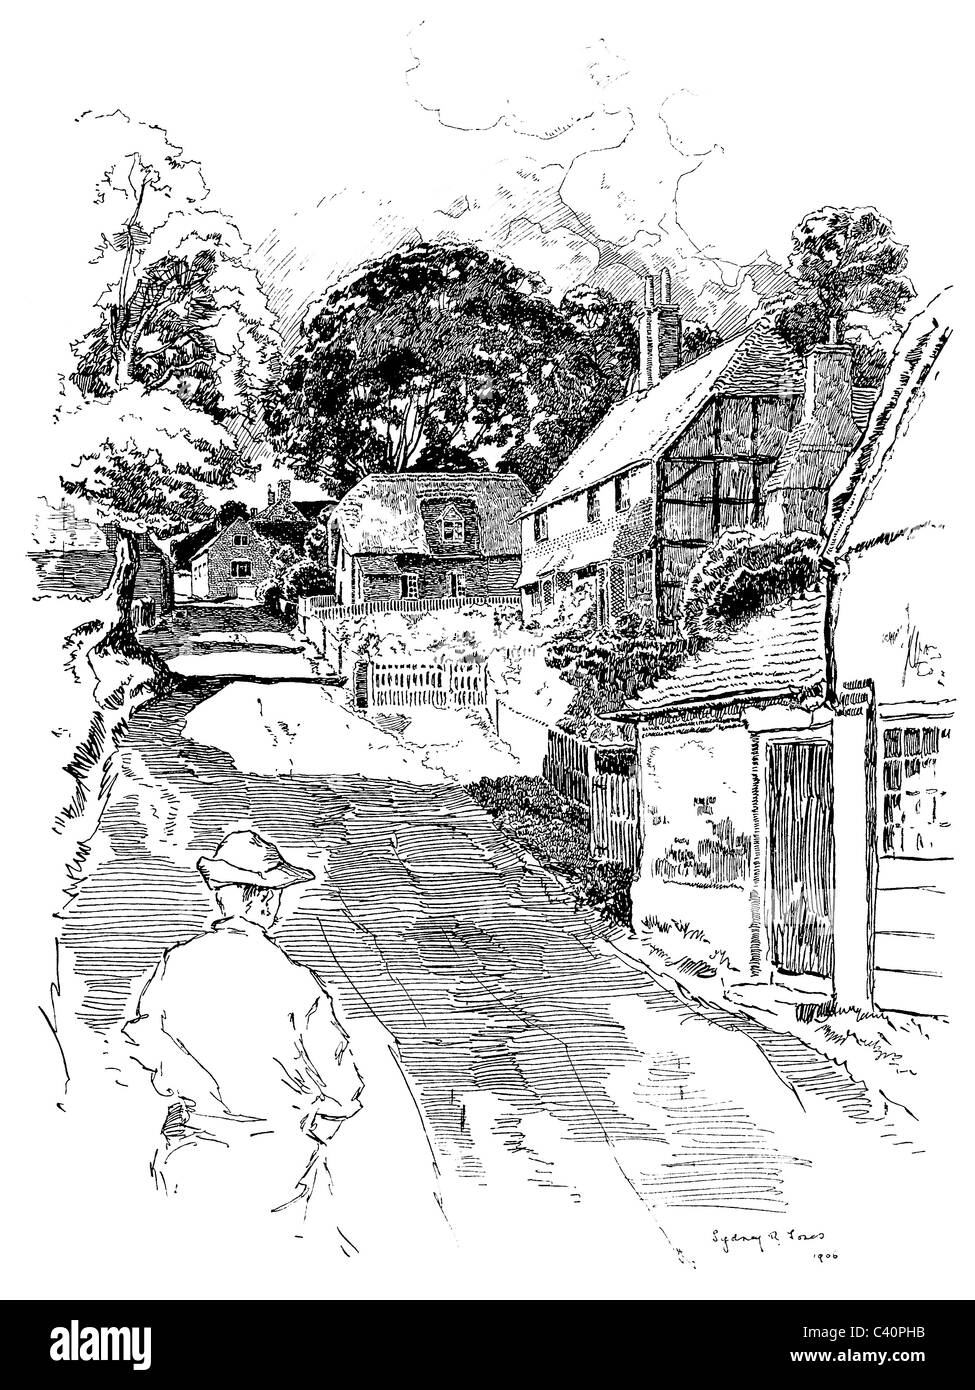 Upton grigio, Hampshire - Penna e inchiostro illustrazione da 'Old English Country Cottages' di Charles Holme, 1906. Foto Stock